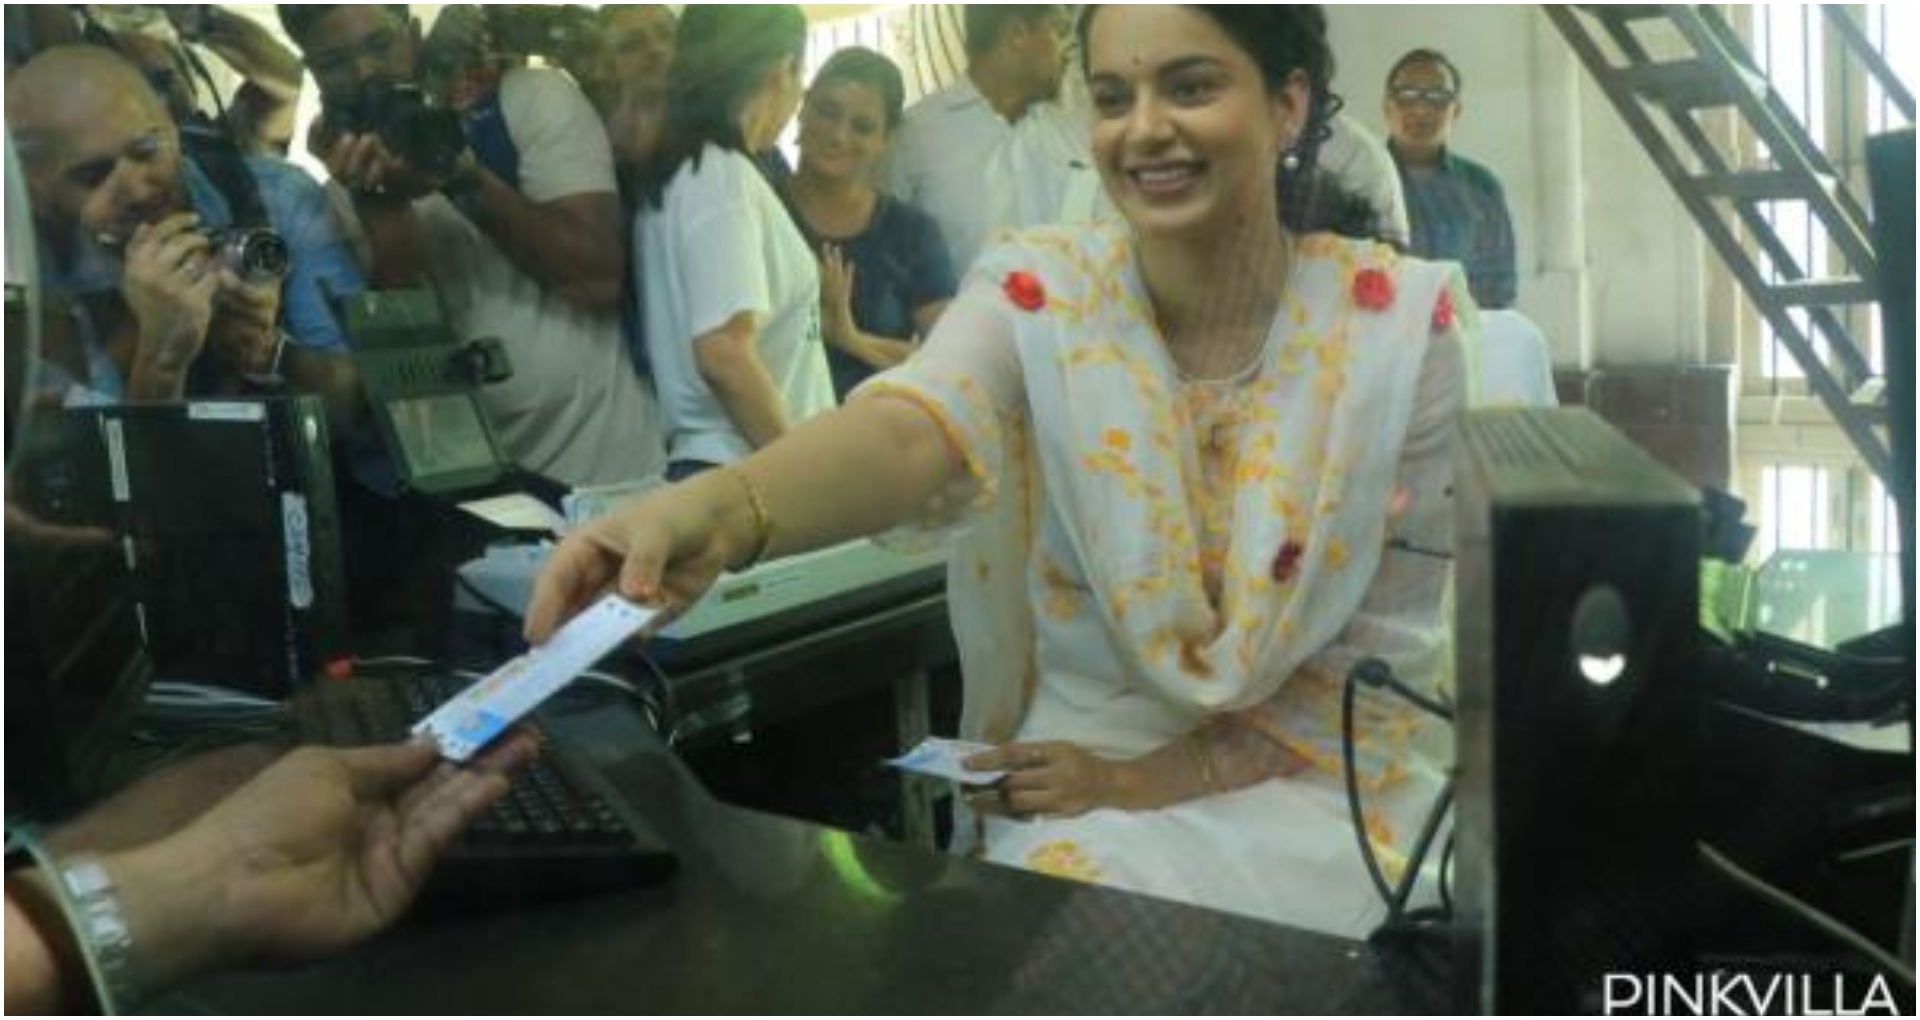 कंगना रनौत ने टिकट विक्रेता बन लोगों को दिए टिकट, फिल्म पंगा का प्रमोशन करने पहुंची थीं सीएसटी स्टेशन, फोटोज